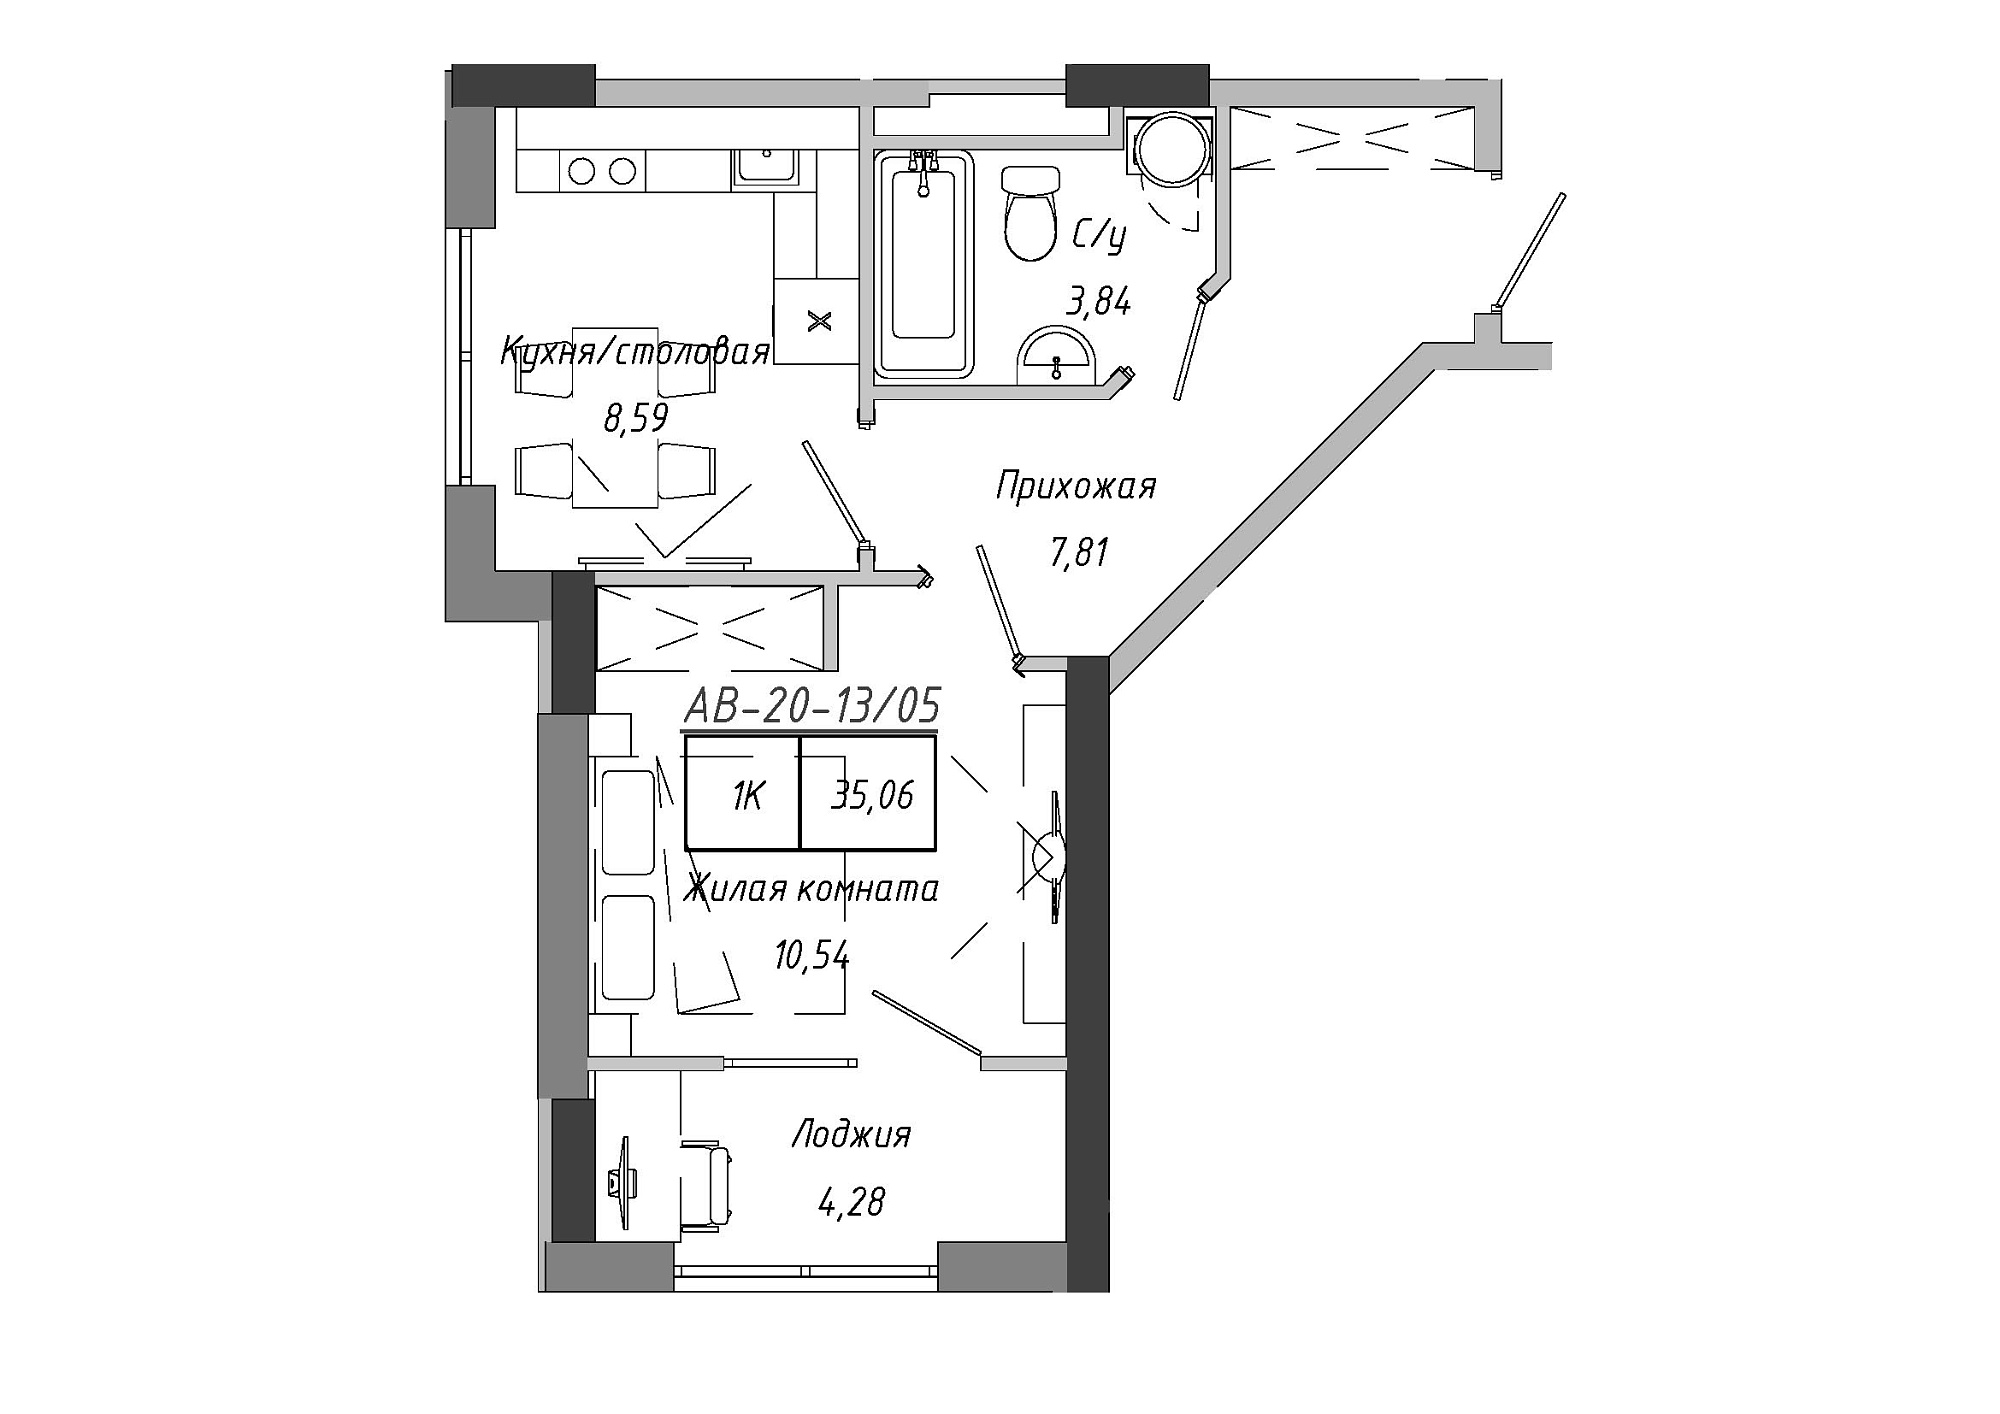 Планировка 1-к квартира площей 35.06м2, AB-20-13/00105.